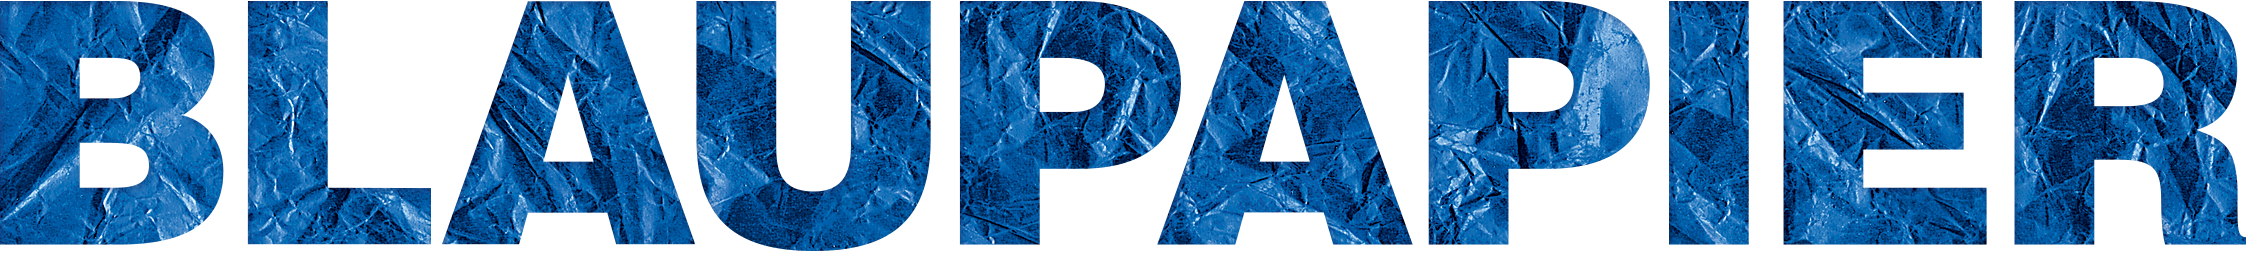 blaupapier bildretusche logo